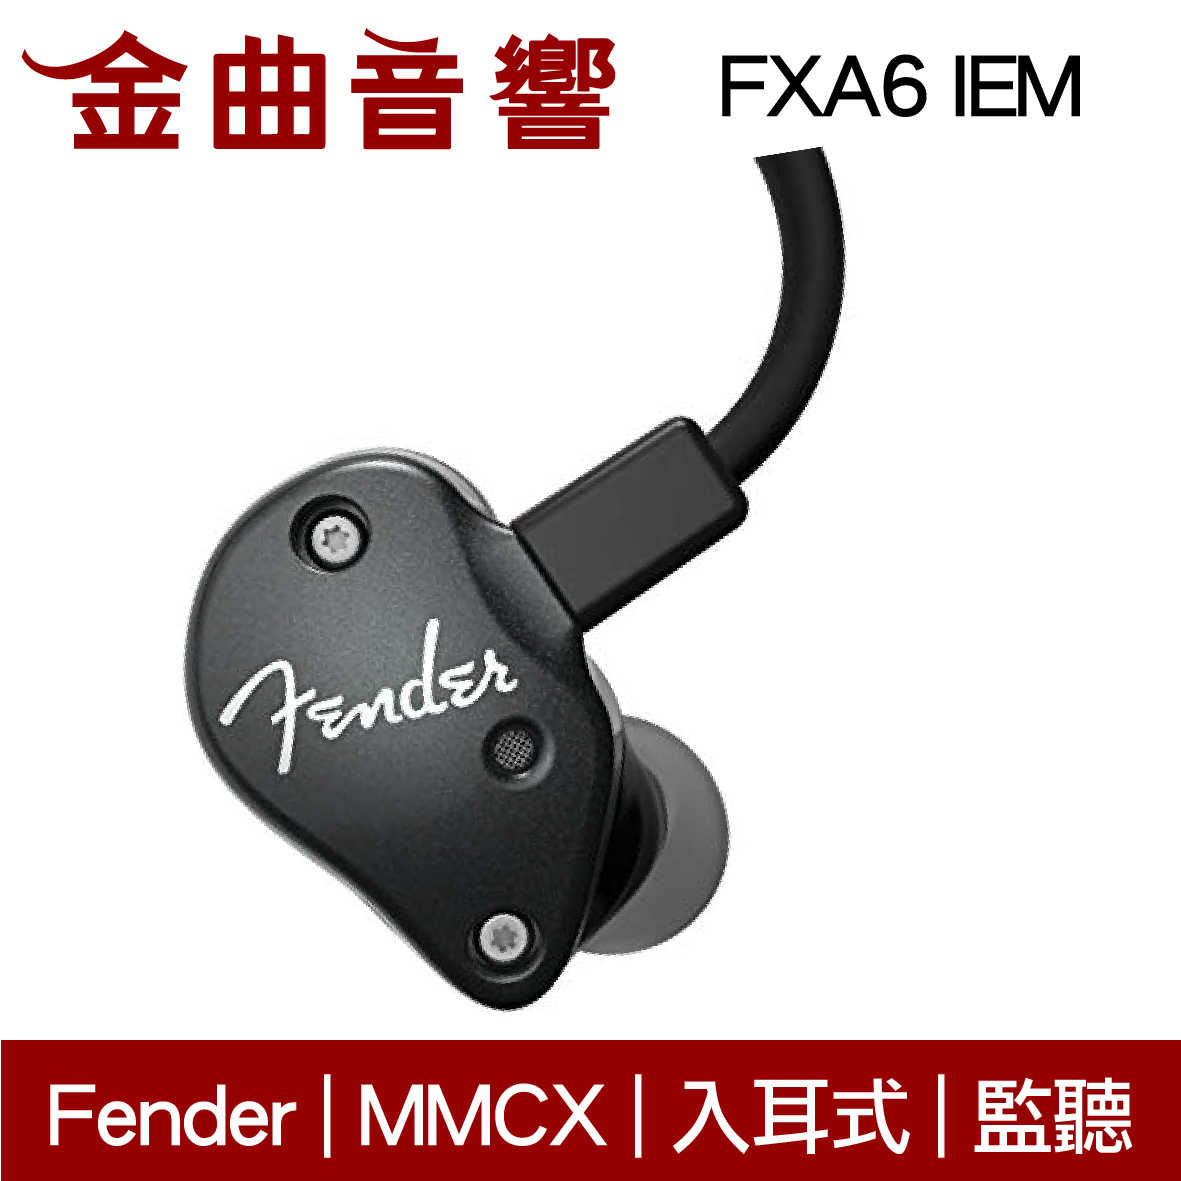 Fender FXA6 IEM 黑色 入耳式 監聽級 耳機 | 金曲音響